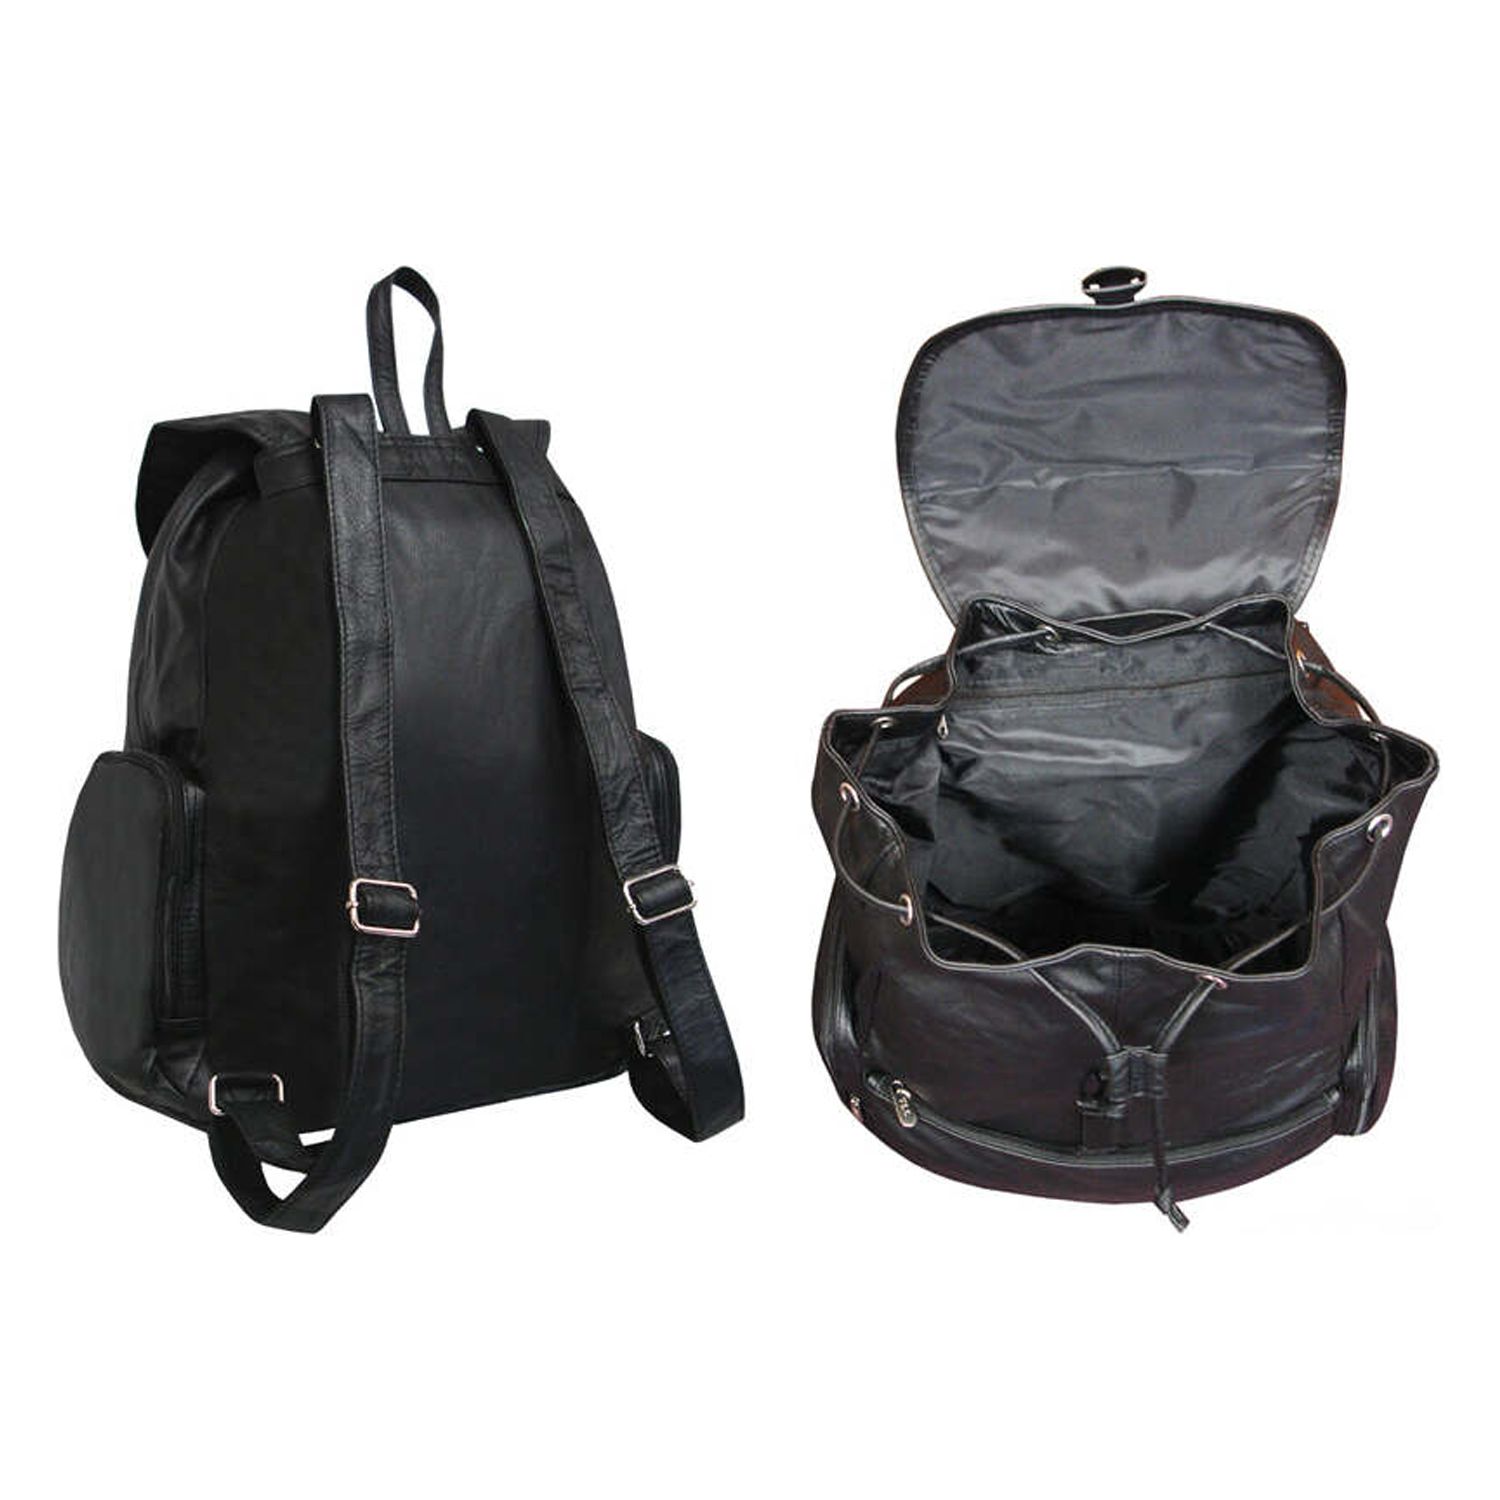 AmeriLeather Jumbo Leather Backpack - image 5 of 7